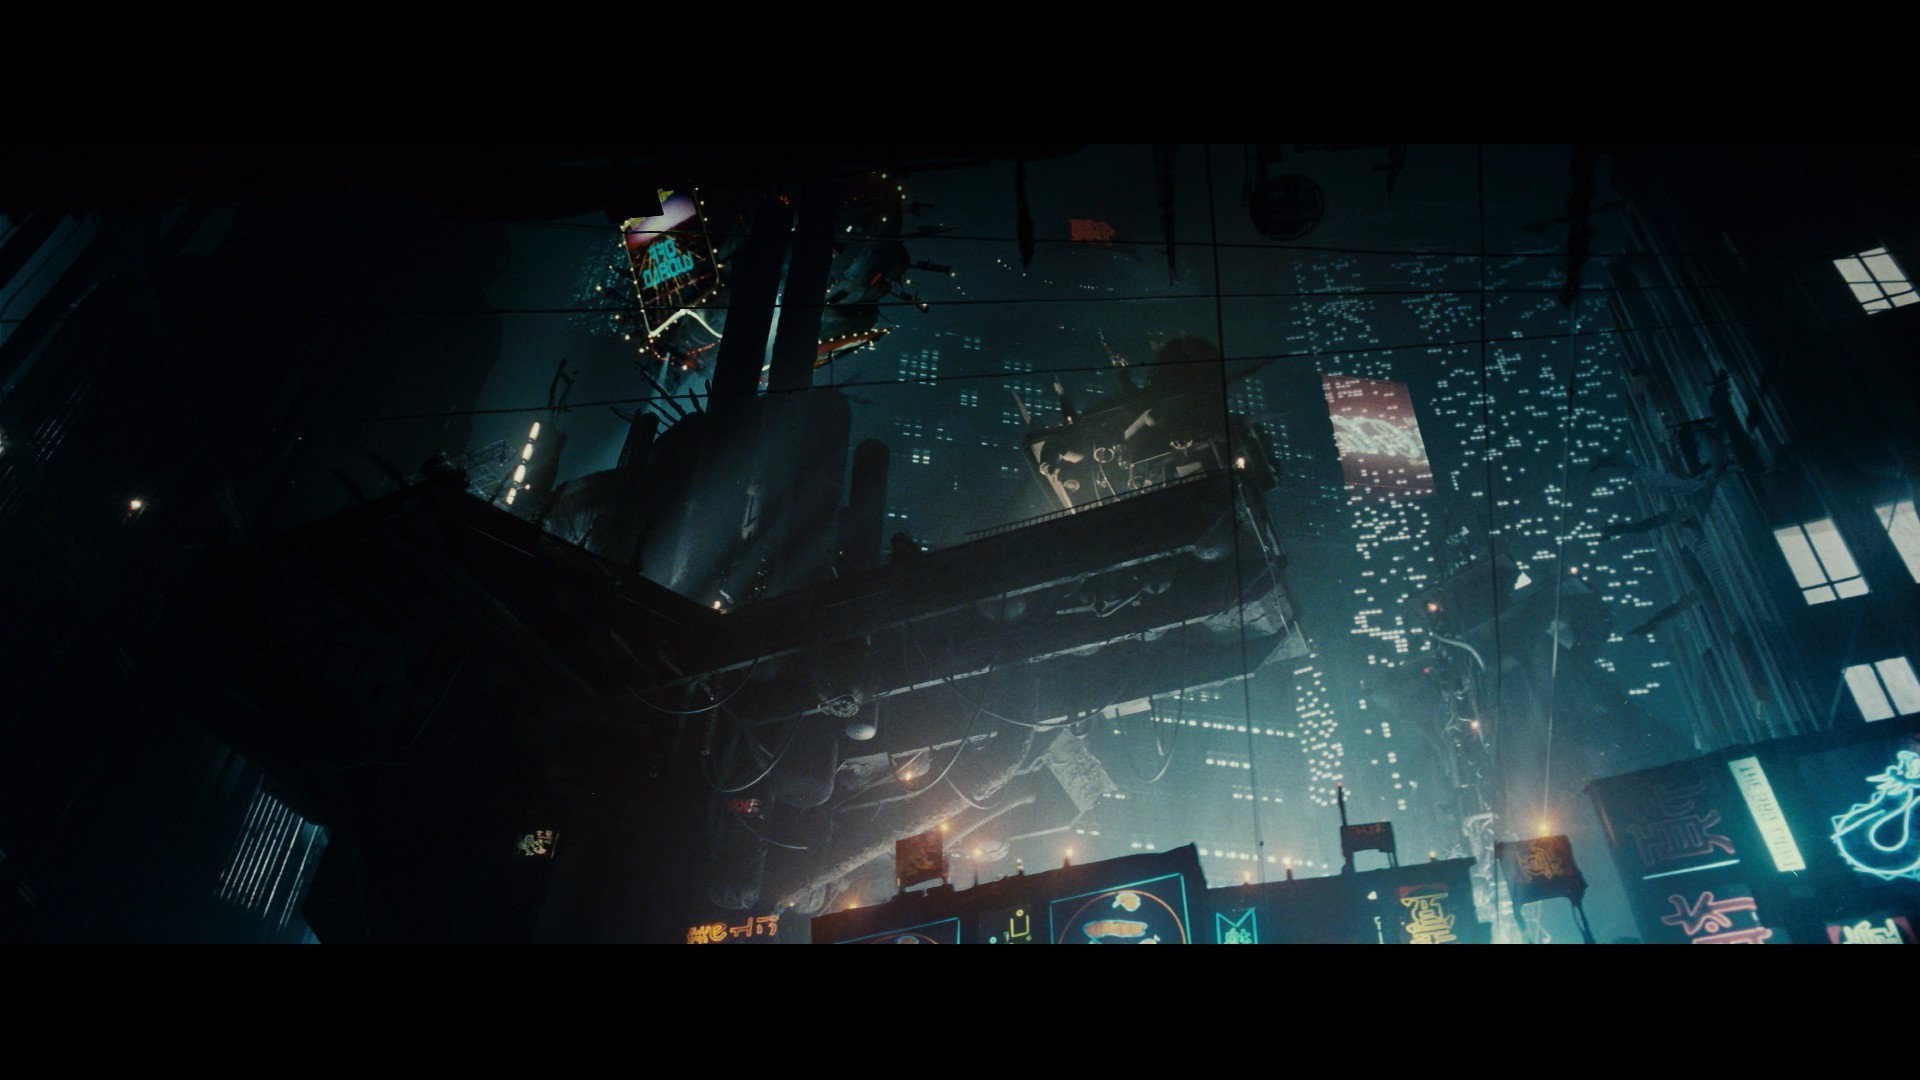 Blade Runner Wallpaper 71 Images 7722